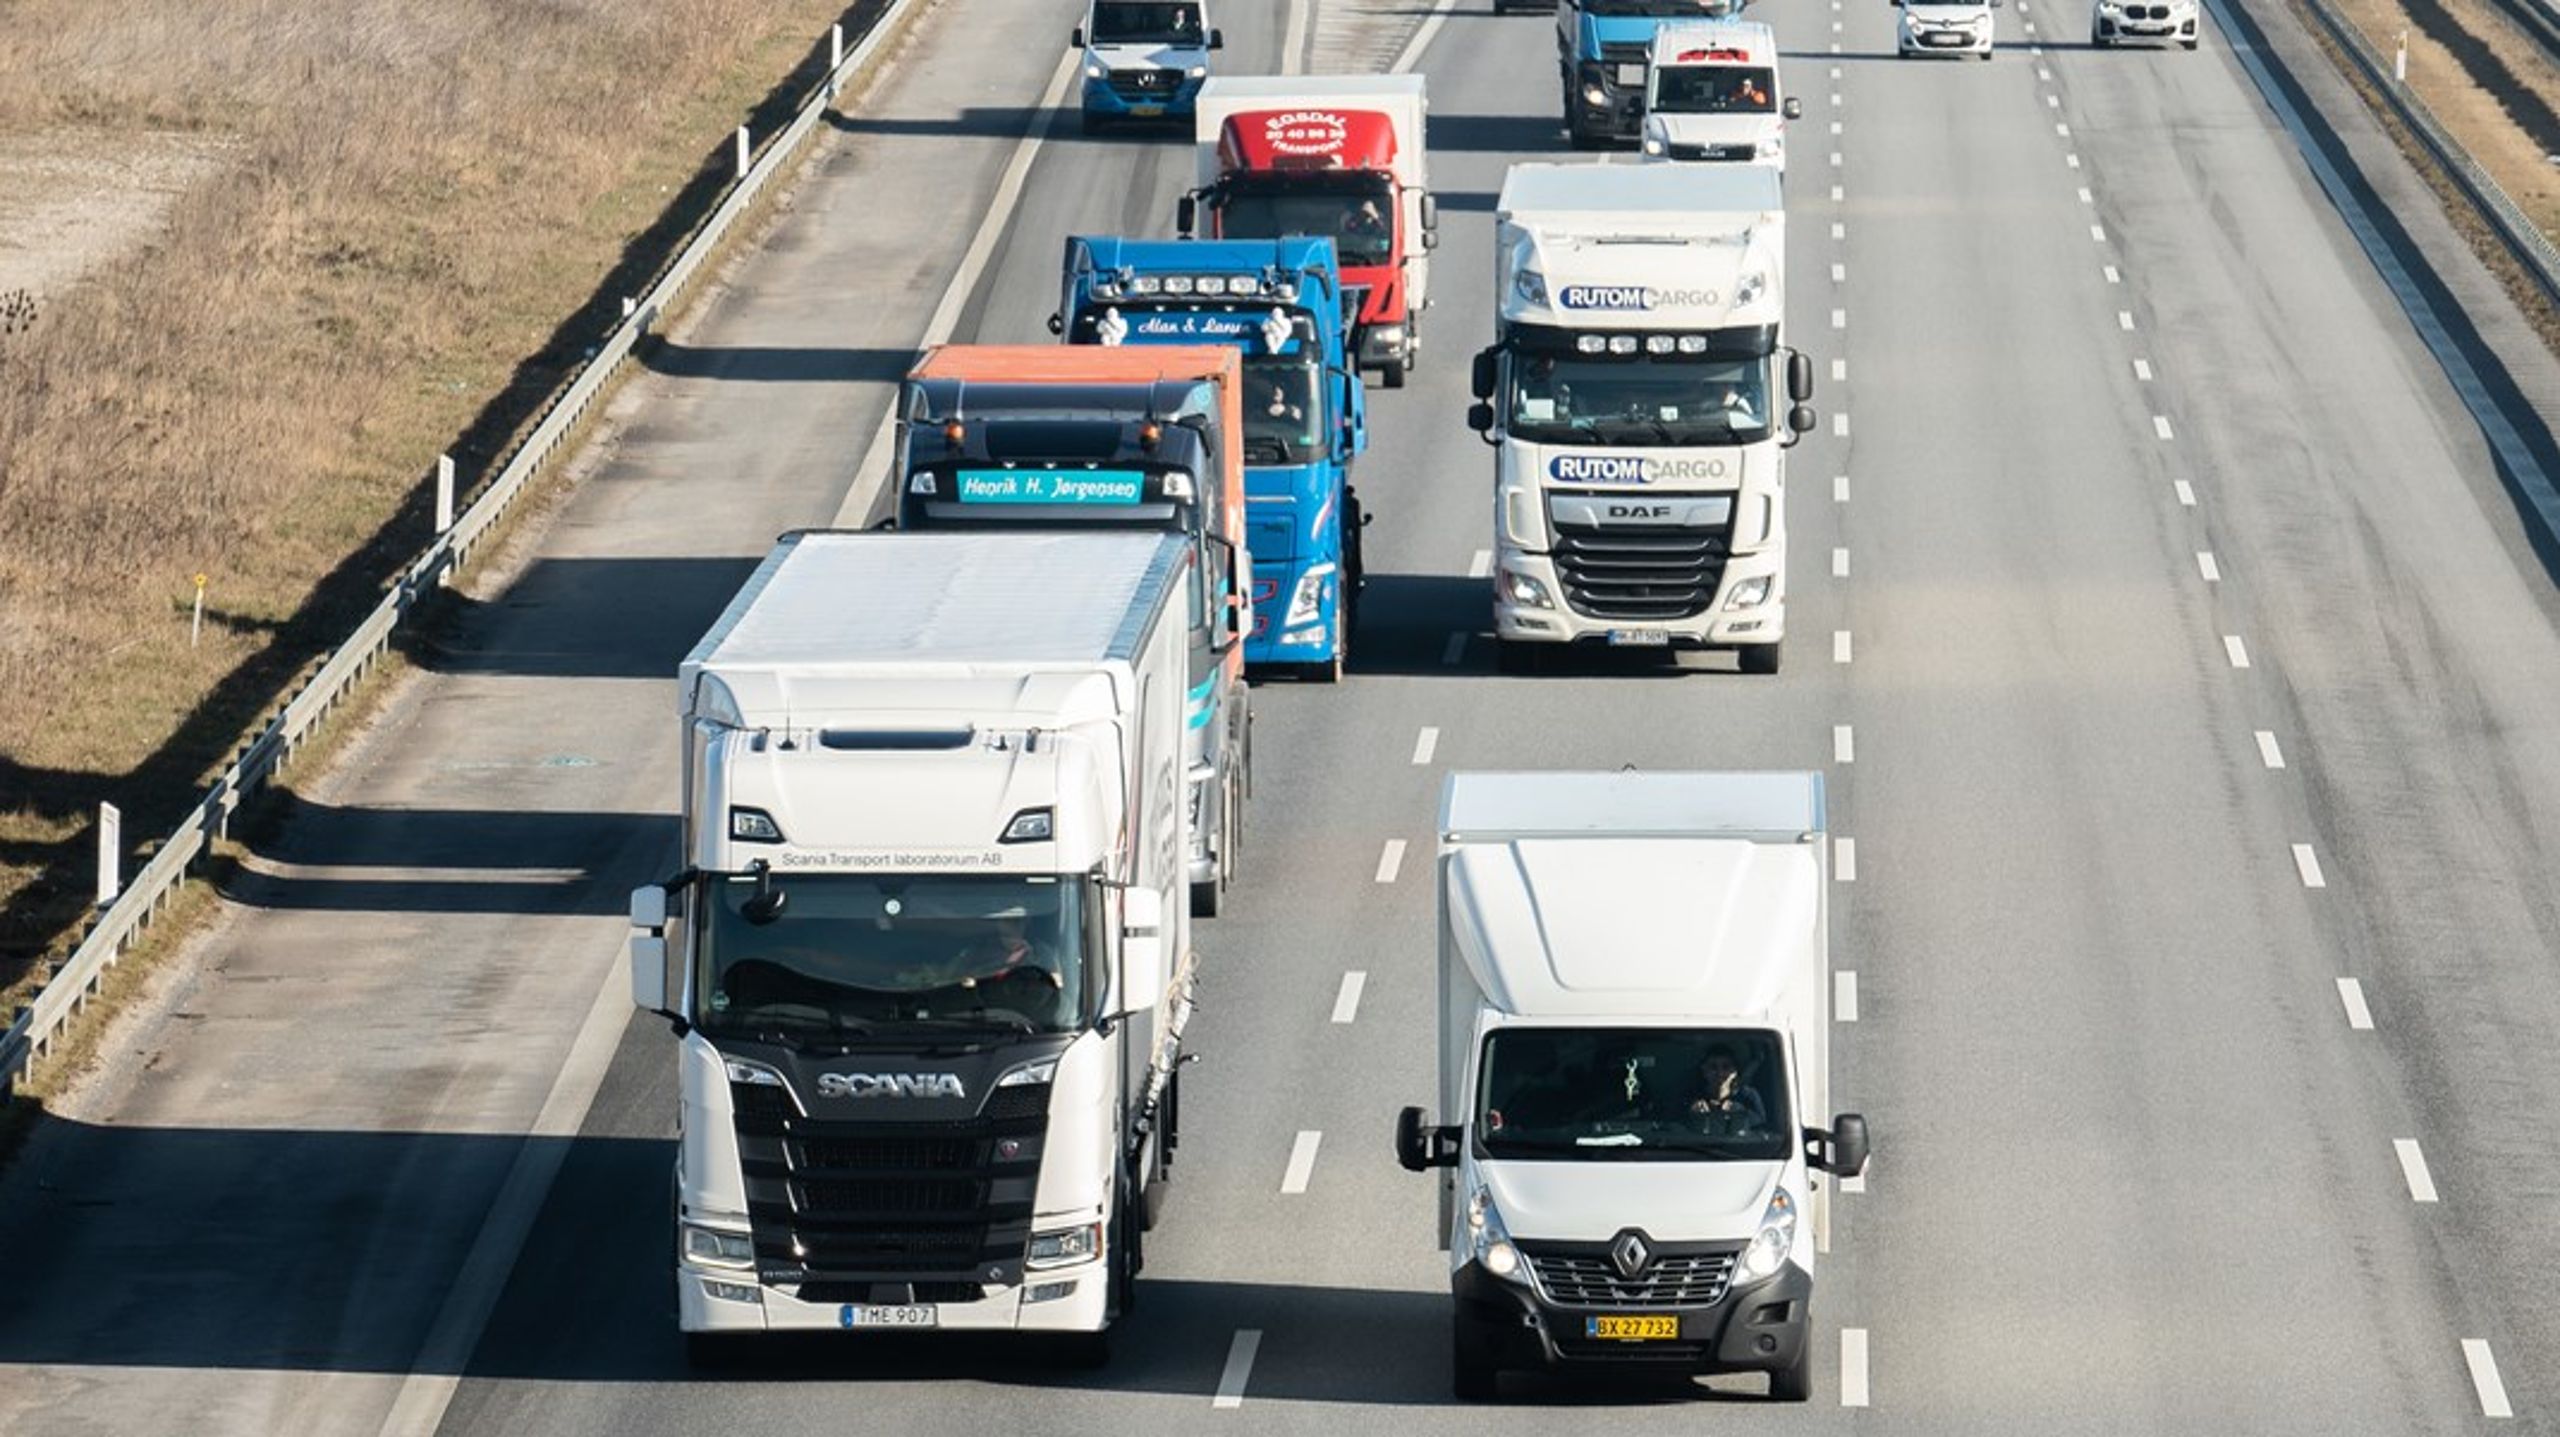 Der har hidtil ikke været nogle problemer med at mange lastbilchauffører arbejder meget. Men det bliver der nu, hvis myndighederne skal til at føre kontrol med arbejdstid, skriver ITD.